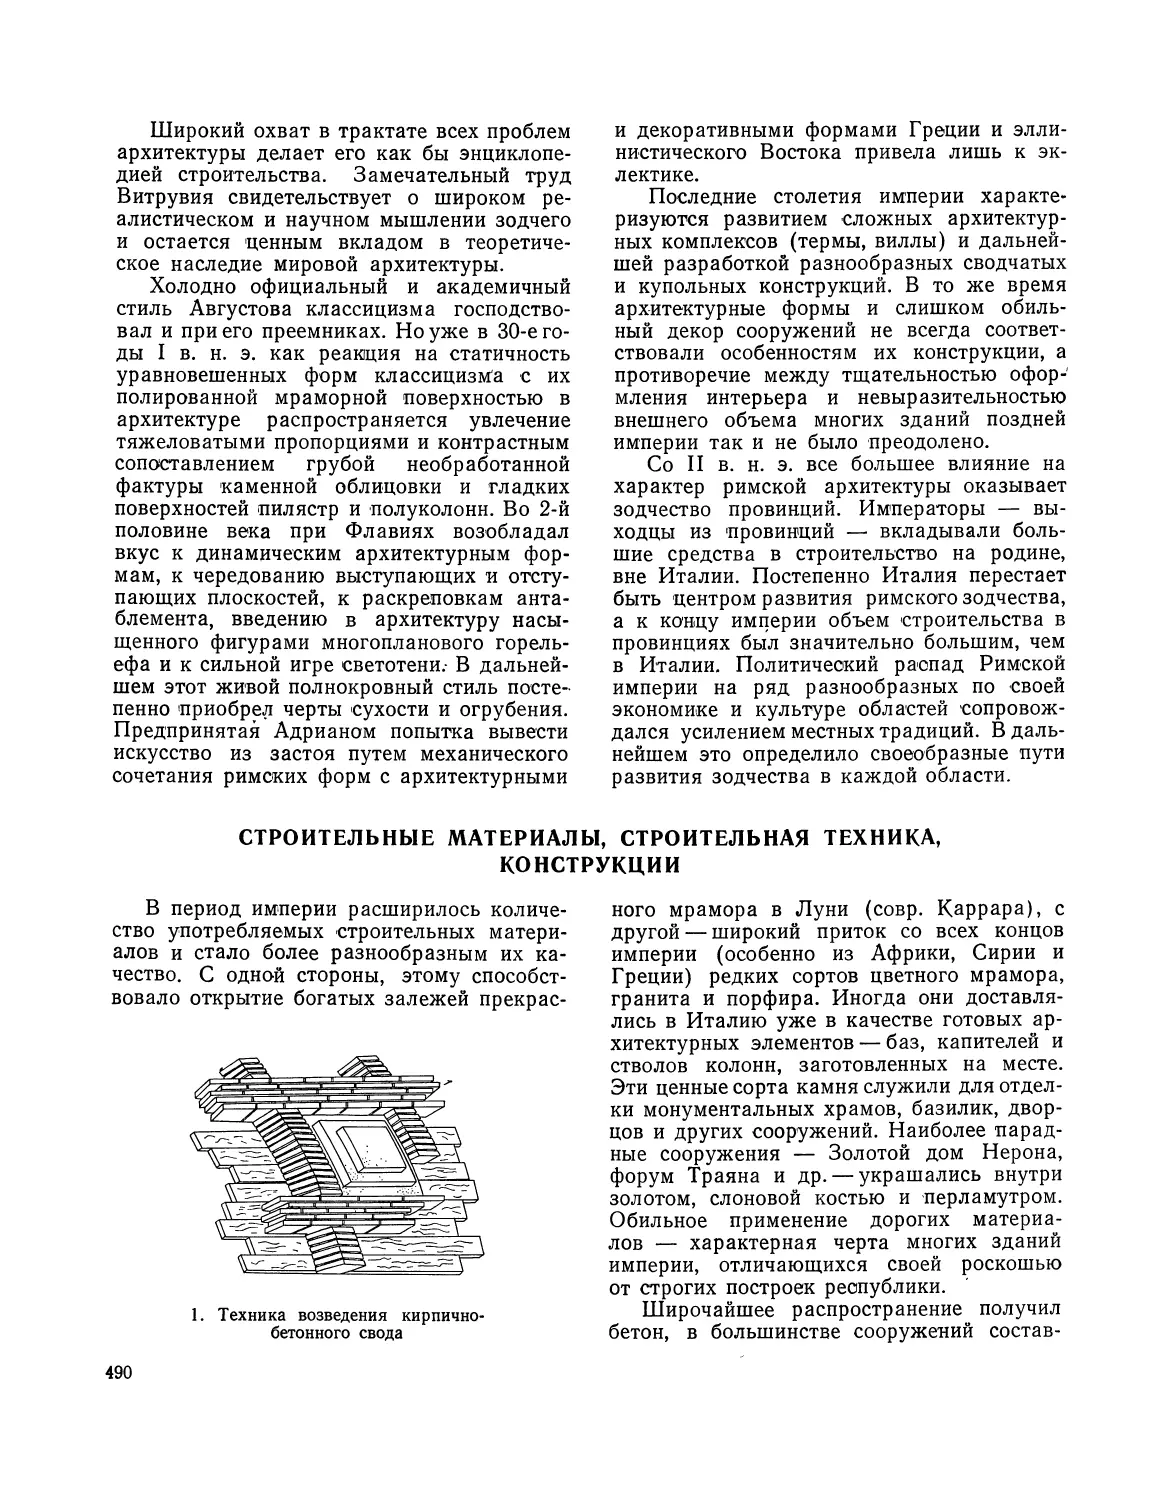 Строительные материалы, строительная техника, конструкции — И. С. Николаев